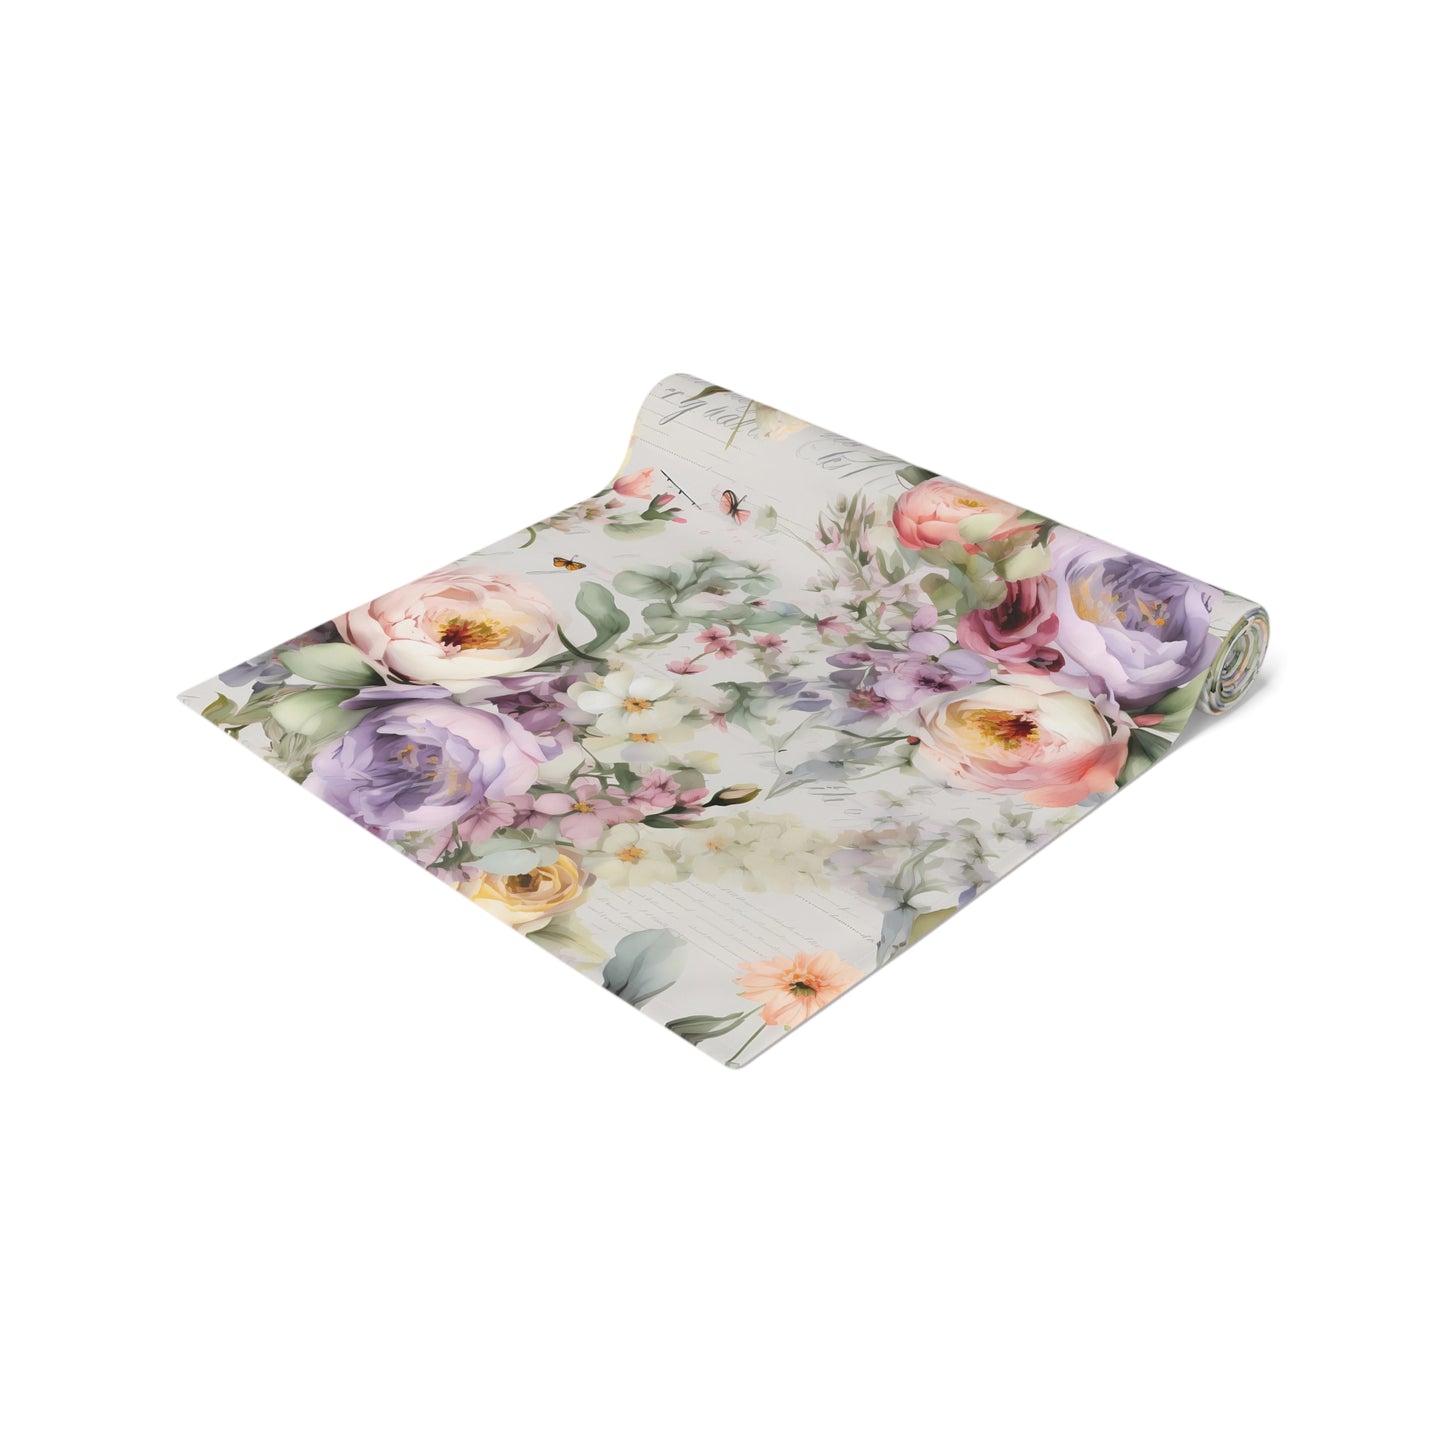 Floral Table Runner / Purple Flower Table Runner